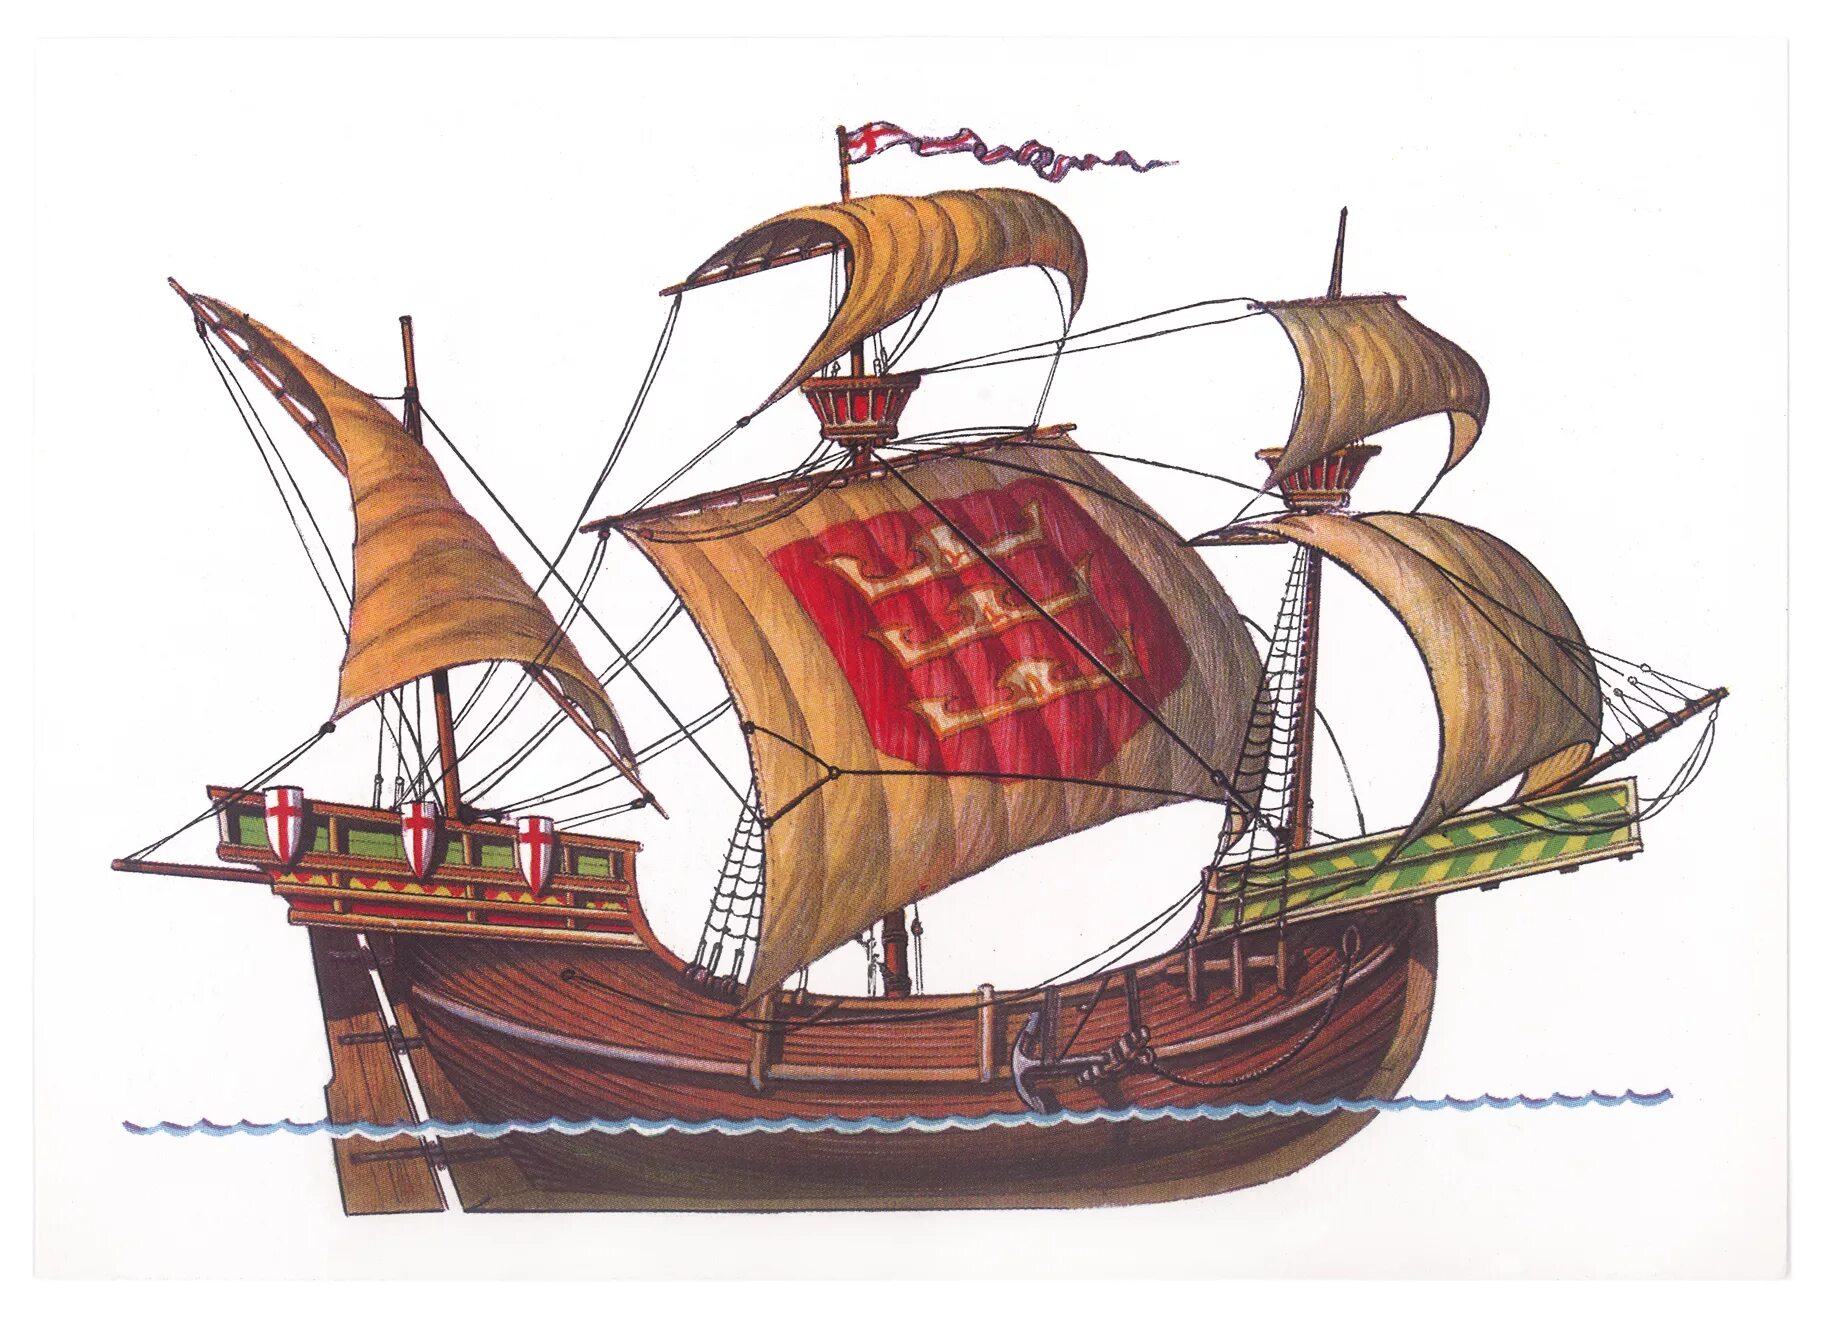 Неф корабль 15 века. Венецианский Неф корабль. Когг корабль средневековья. Средневековый корабль Неф Венецианский. Век суда